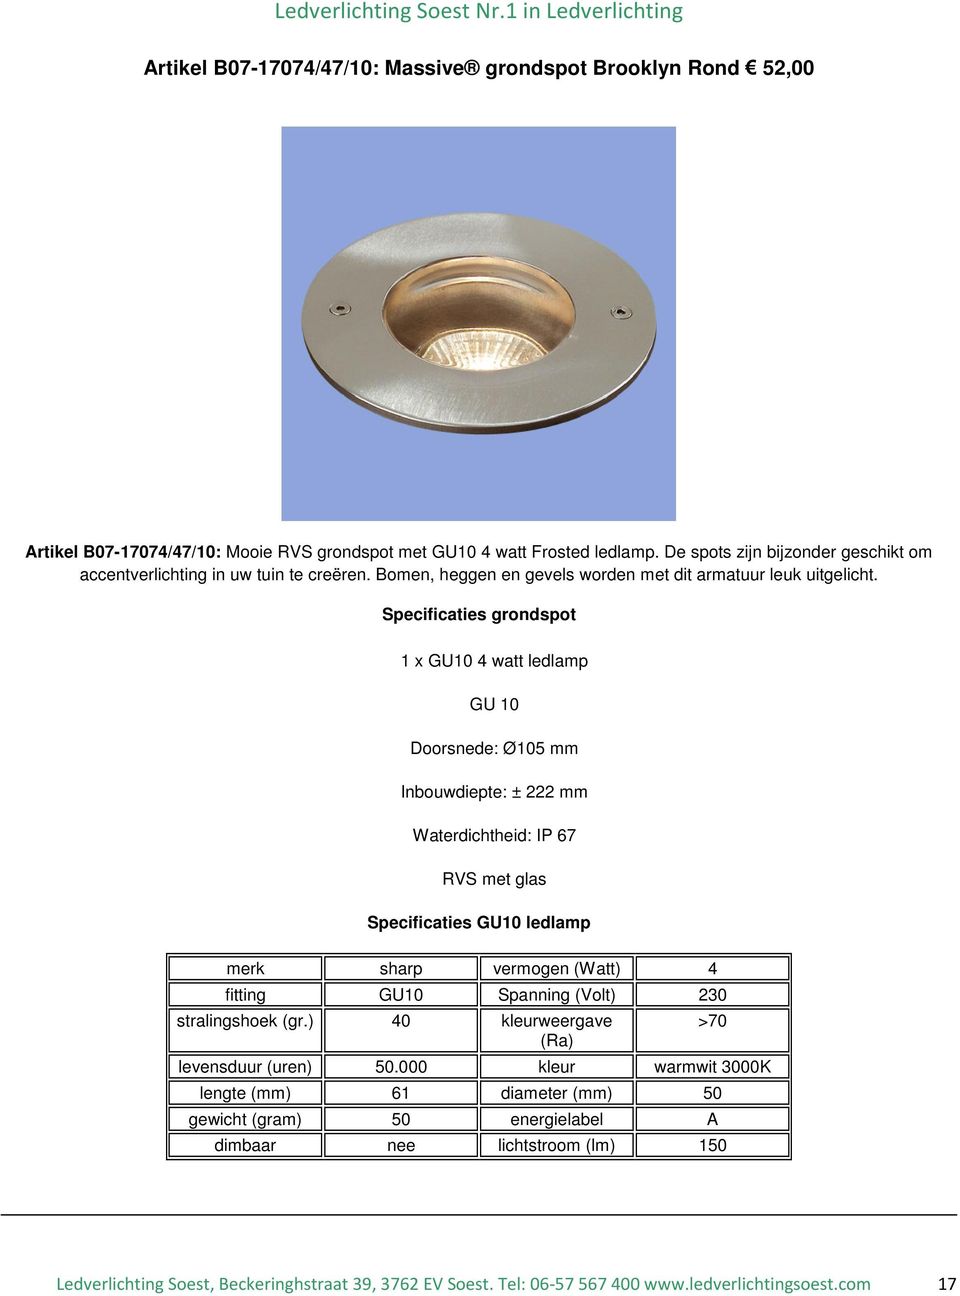 Specificaties grondspot 1 x GU10 4 watt ledlamp GU 10 Doorsnede: Ø105 mm Inbouwdiepte: ± 222 mm Waterdichtheid: IP 67 RVS met glas Specificaties GU10 ledlamp merk sharp